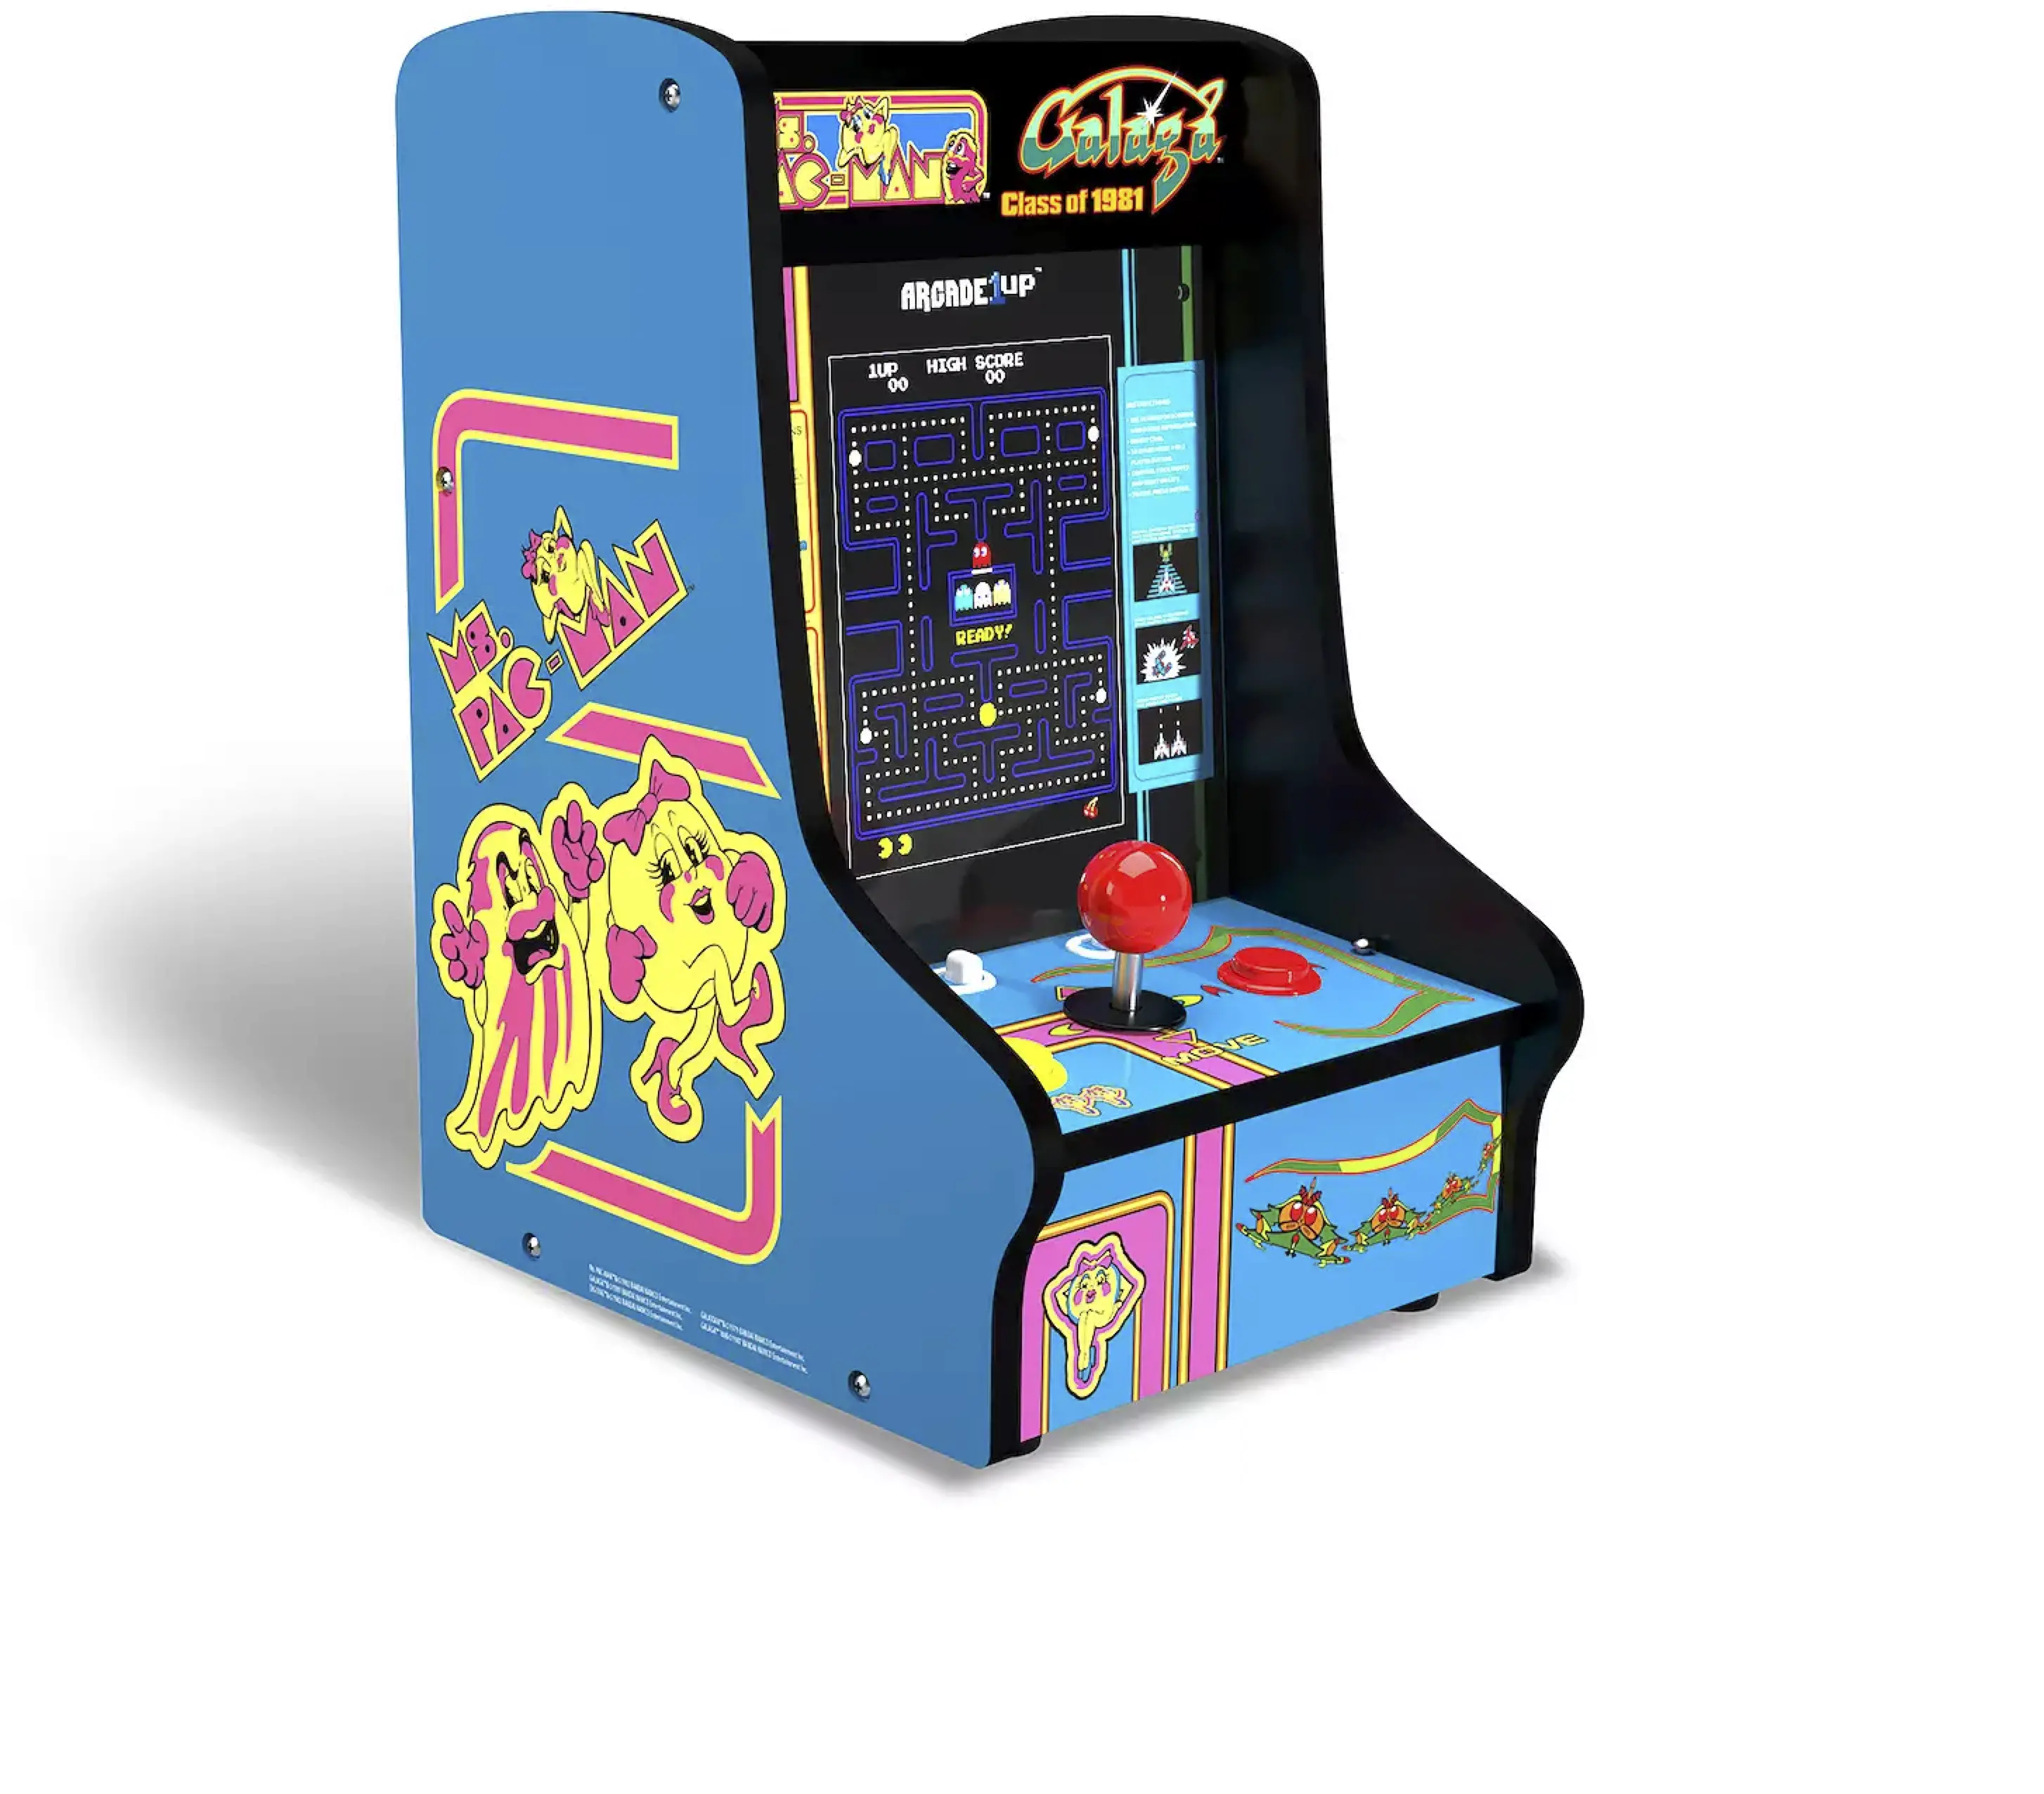 Arcade1Up Ms. Pacman / Galaga Class of 1981 Countercade Arcade 